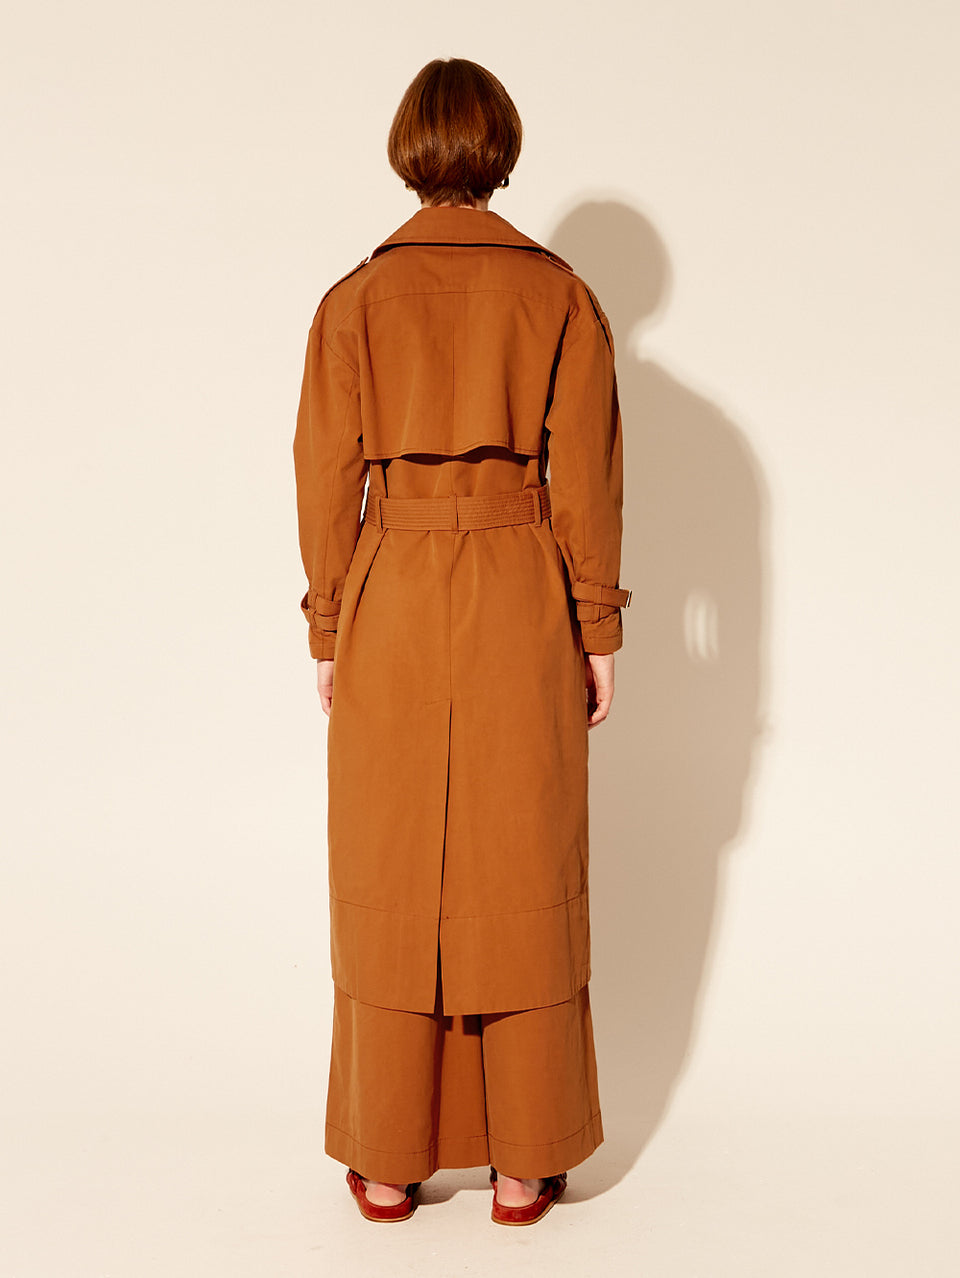 Carolina Trench Coat KIVARI | Model wears burnt orange trench coat back view